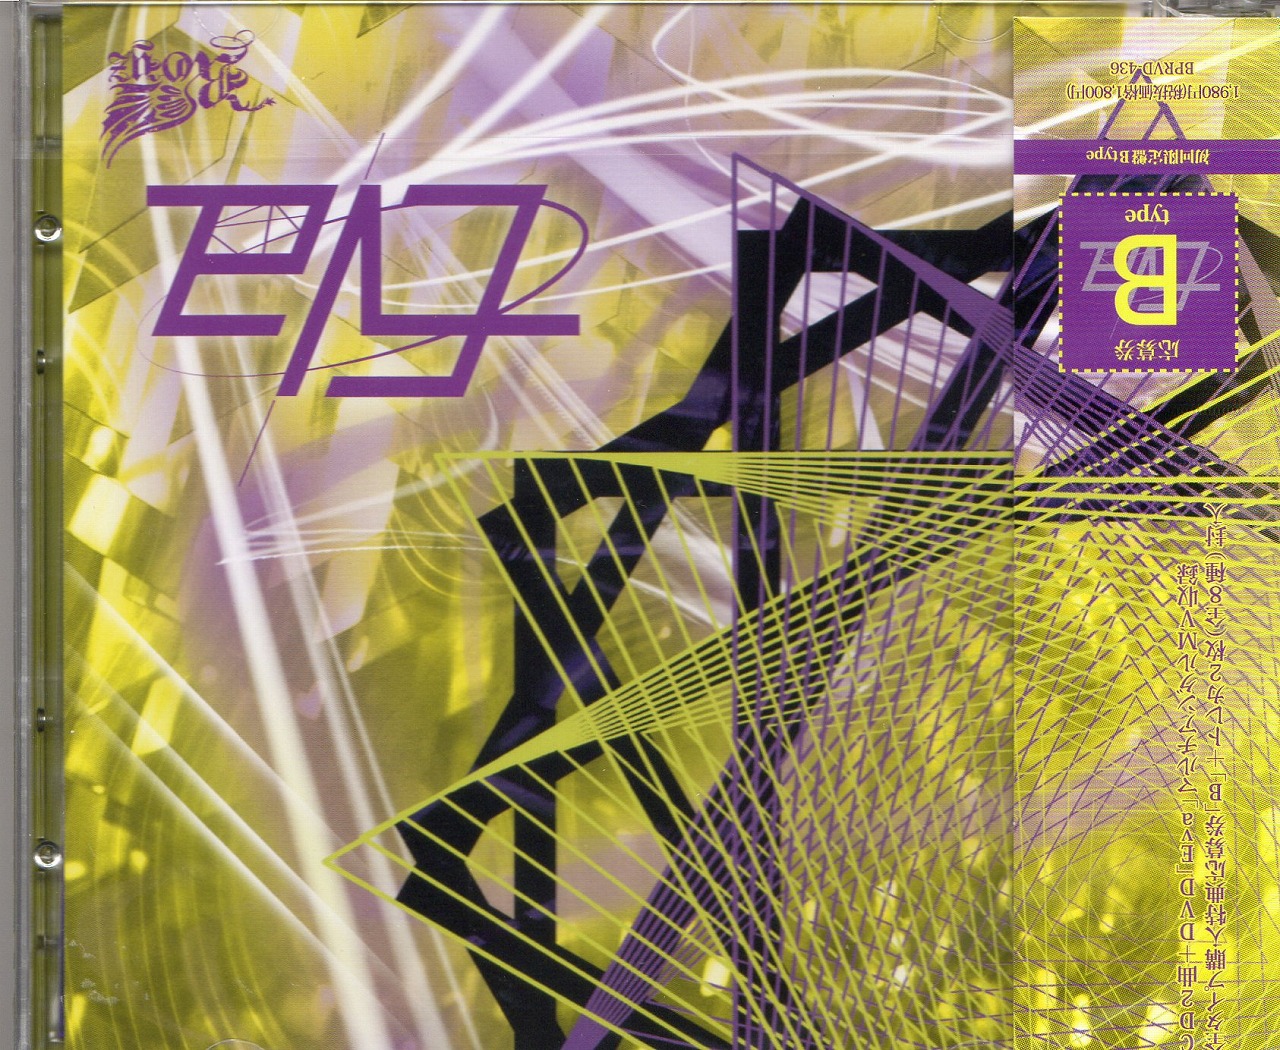 ロイズ の CD 【B Type】Eva